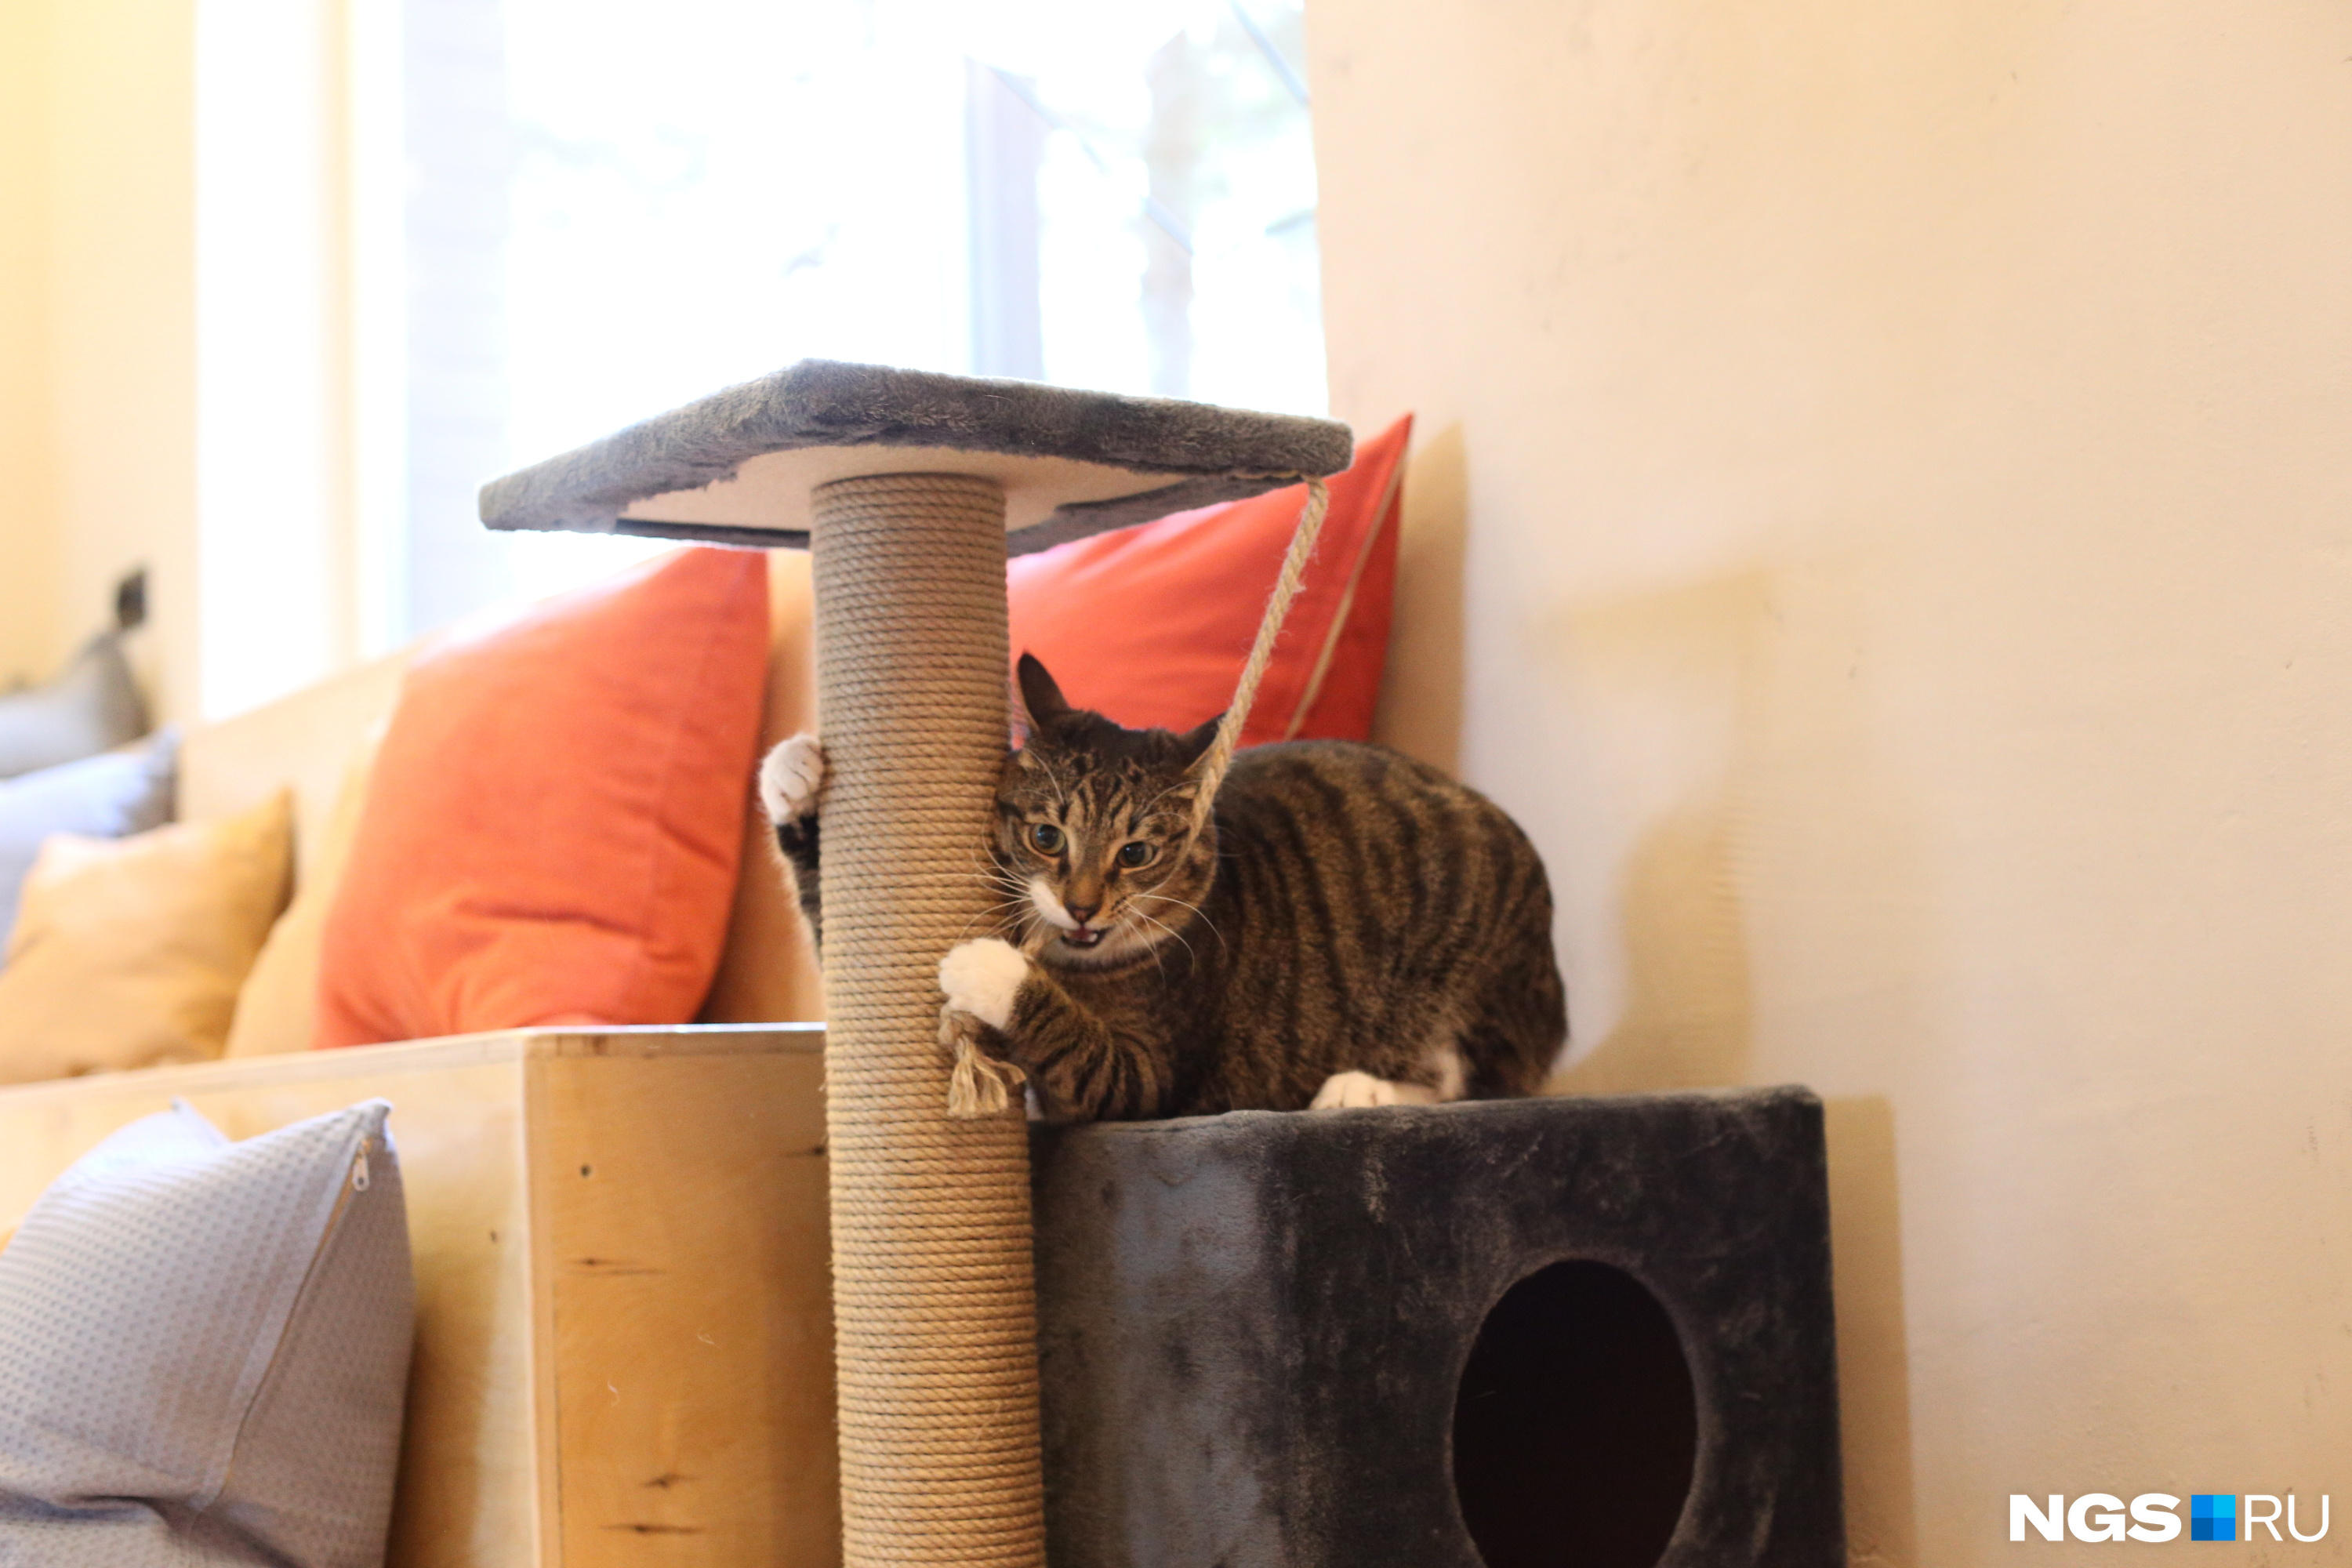 Это Матисс — один из котов-долгожителей из другого филиала. Он очень игривый